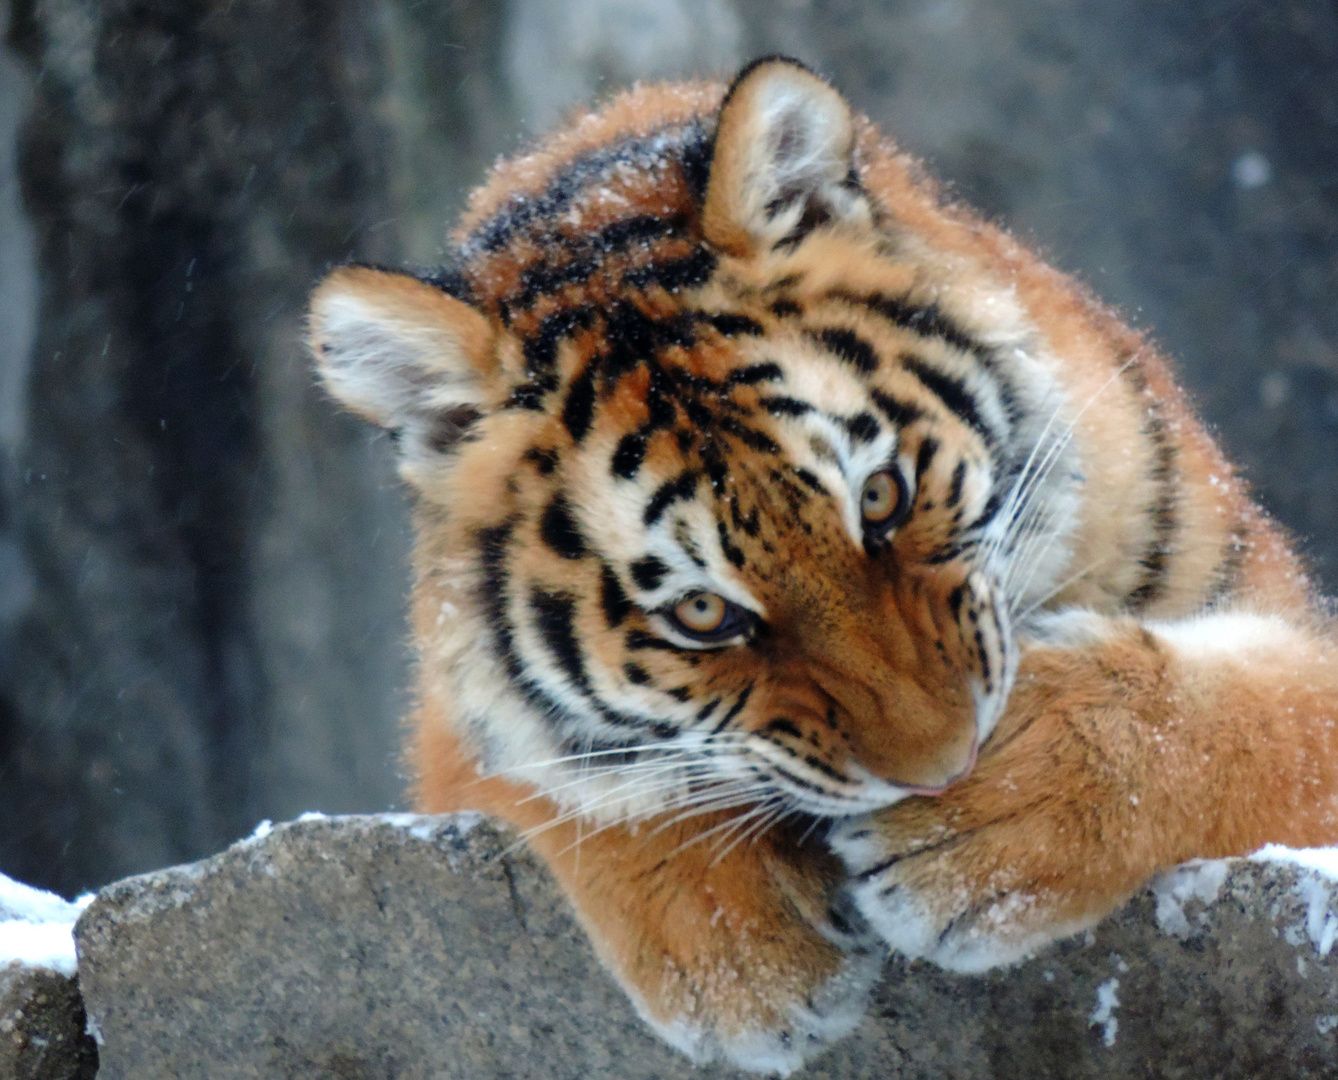  Winter Tiere Hintergrundbild 1338x1080. Sibirischer Tiger erster Winter Foto & Bild. tiere, zoo, wildpark & falknerei, säugetiere Bilder auf fotocommunity